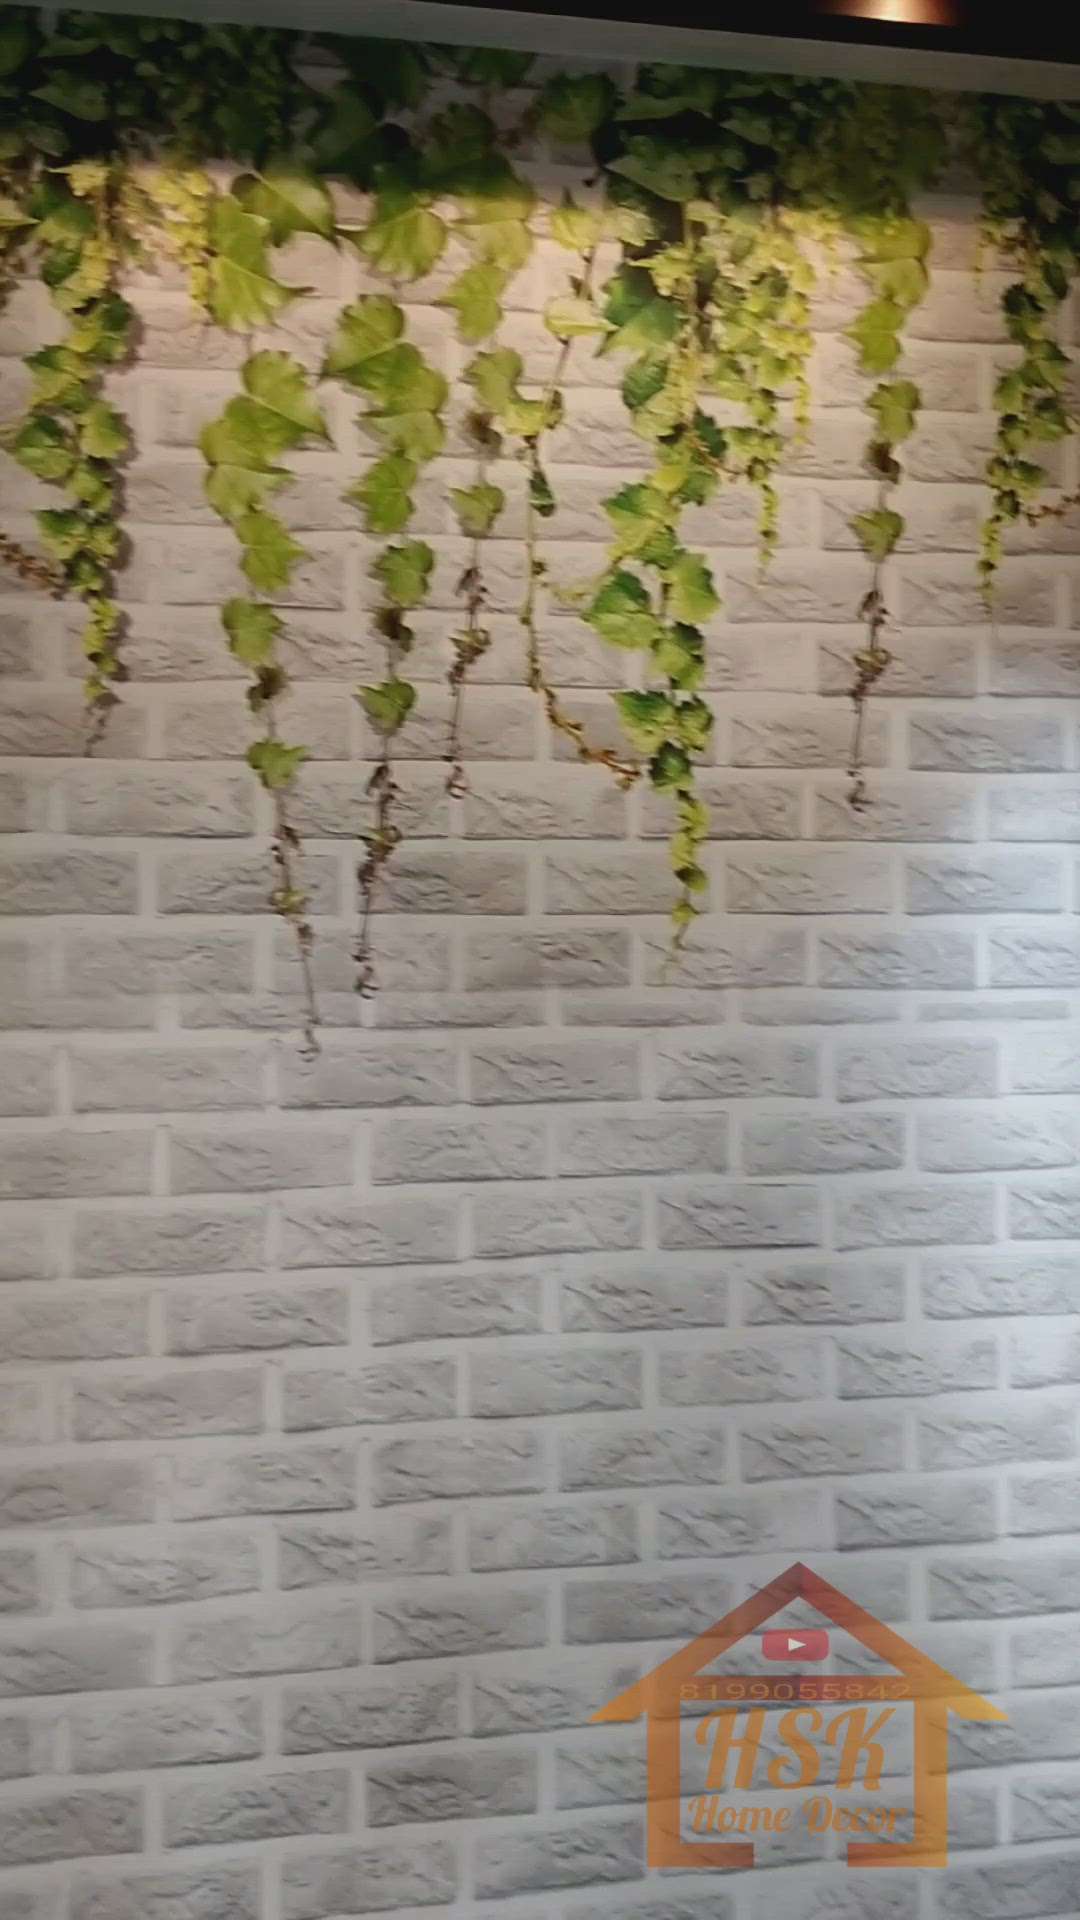 3D wallpaepr by hsk home decor
#3DWallPaper #Architectural&Interior  #InteriorDesigner #LivingRoomWallPaper  #WallDecors